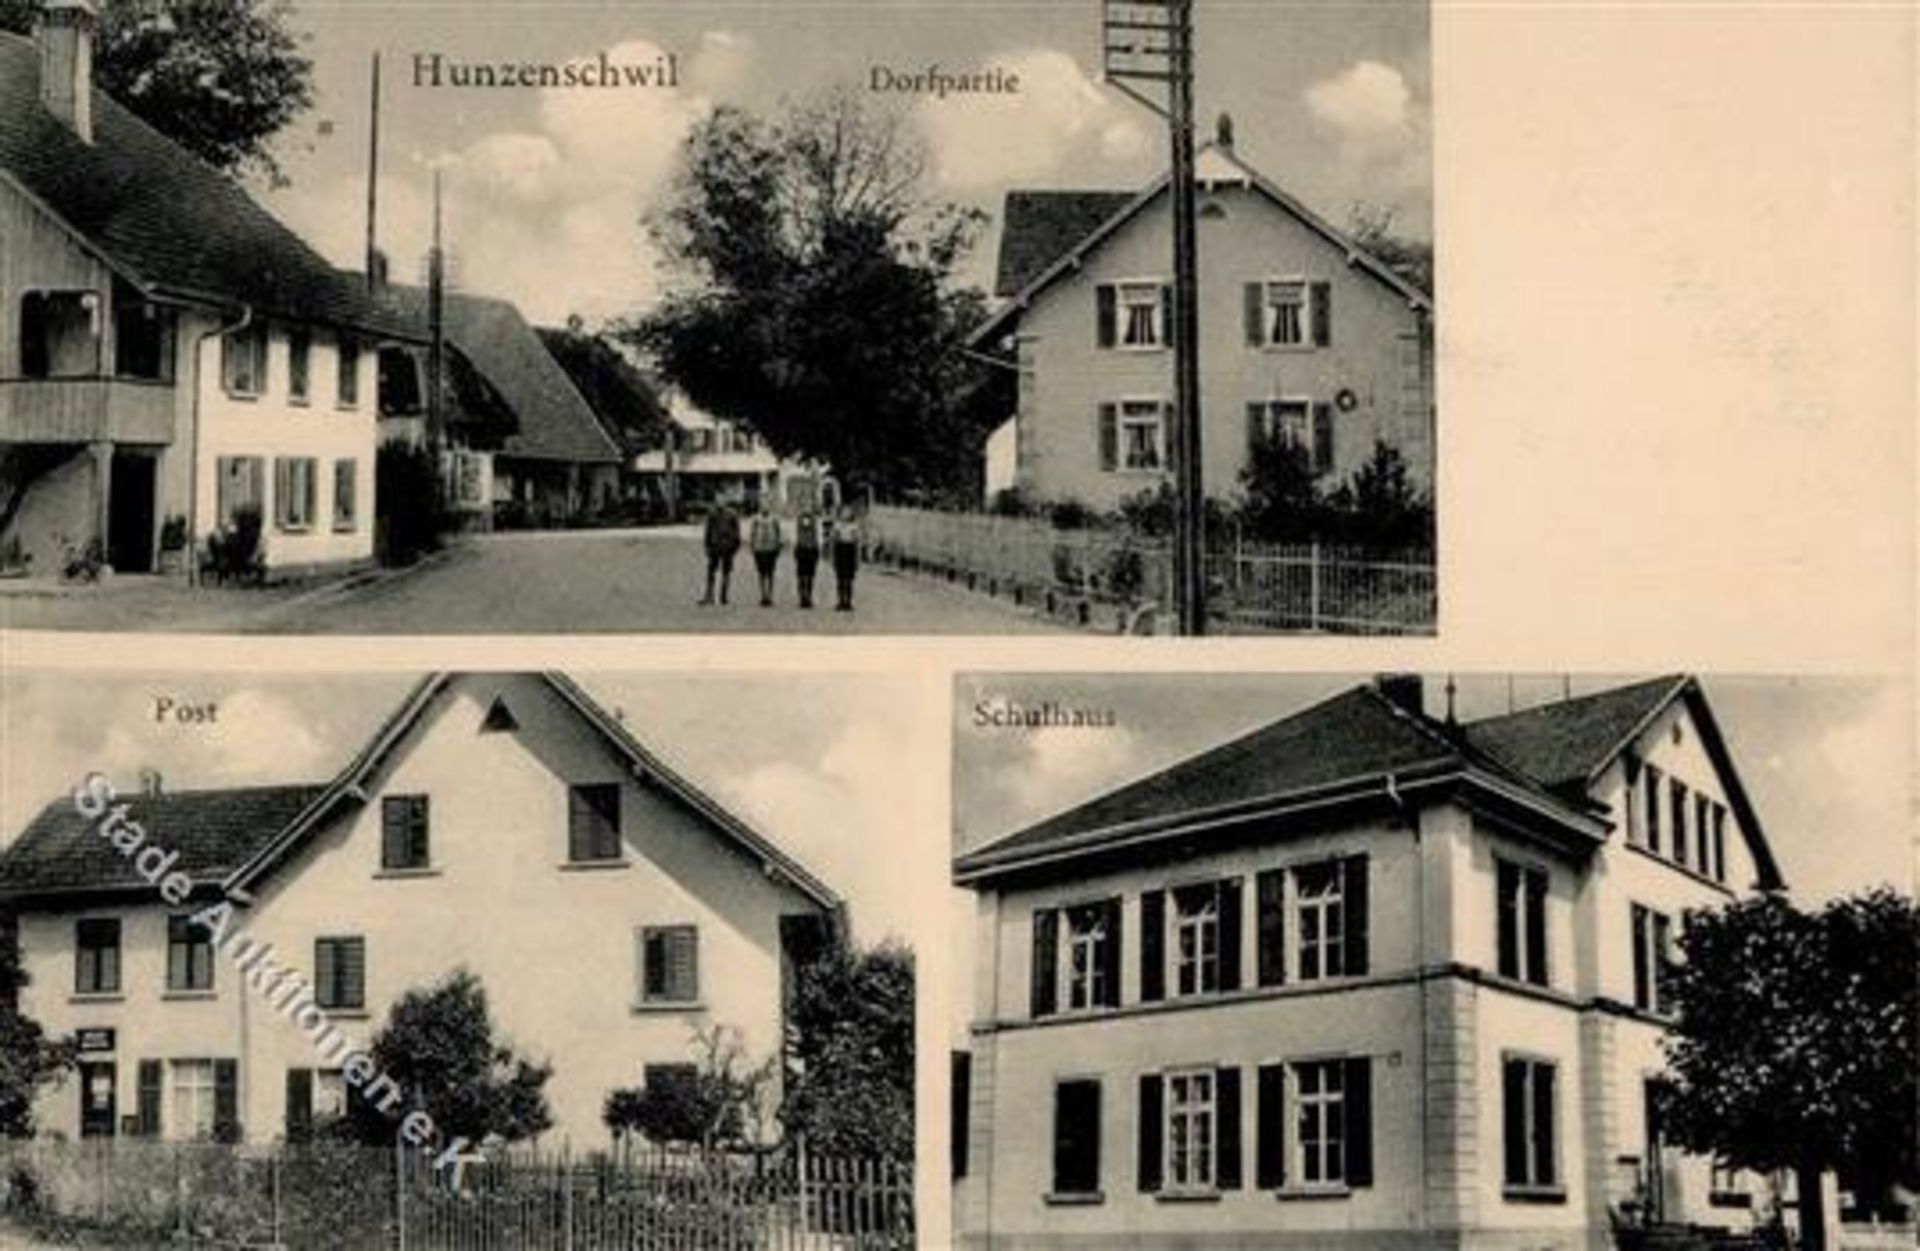 Hunzenschwil (5502) Schweiz Postamt IDieses Los wird in einer online-Auktion ohne Publikum